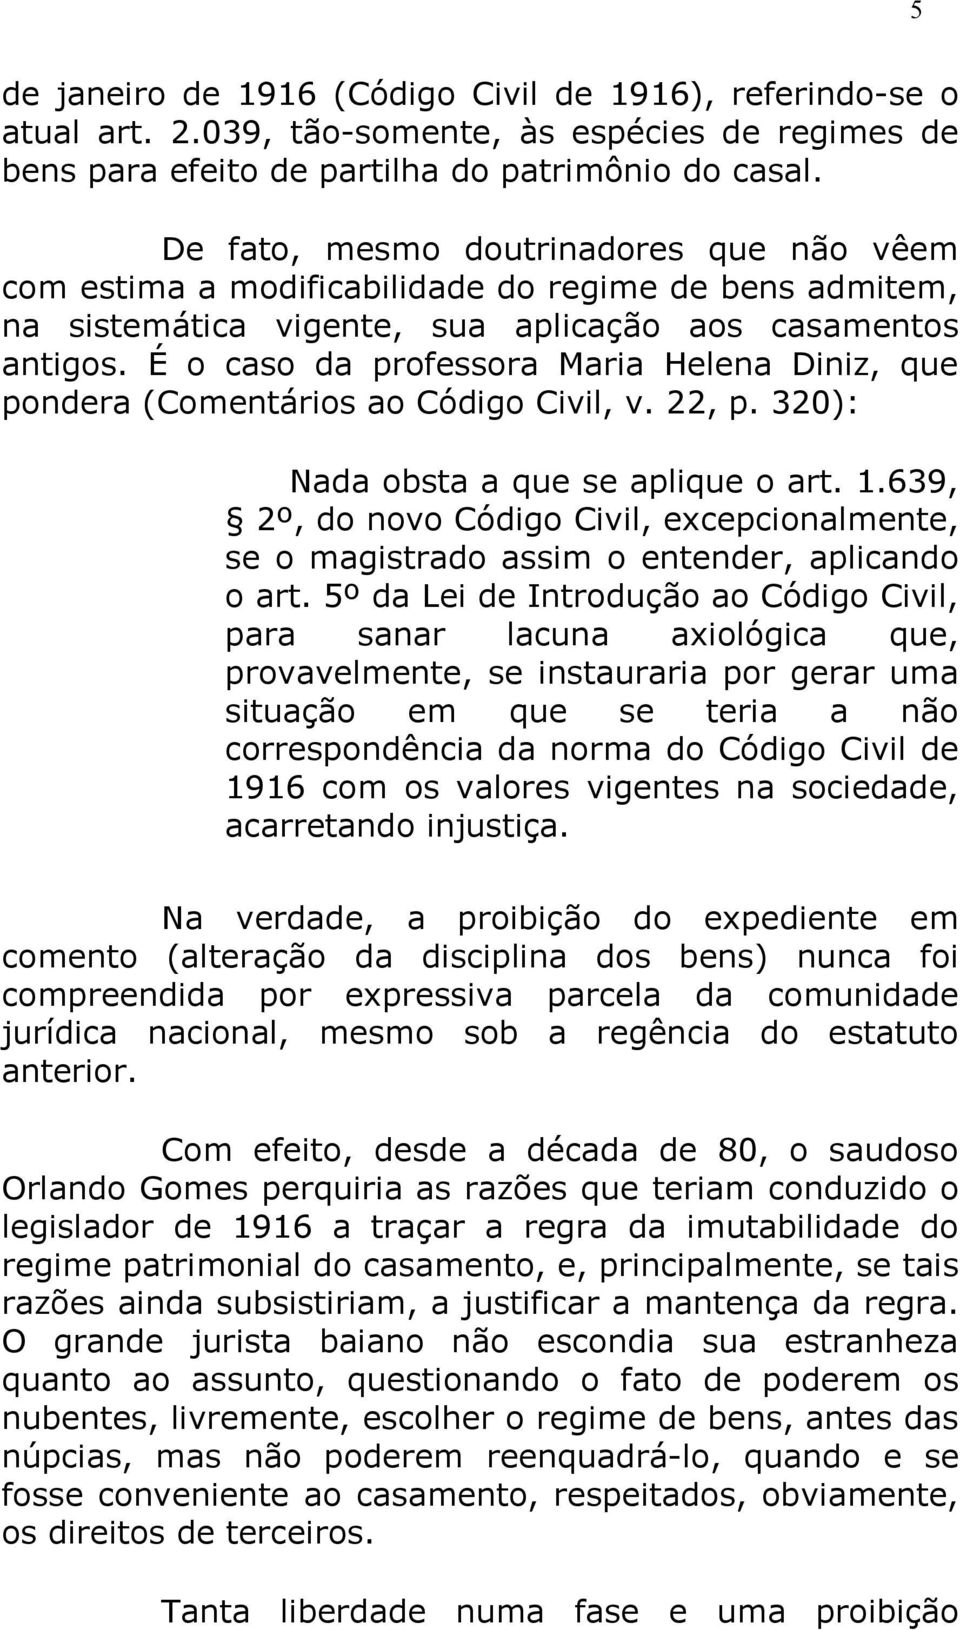 É o caso da professora Maria Helena Diniz, que pondera (Comentários ao Código Civil, v. 22, p. 320): Nada obsta a que se aplique o art. 1.